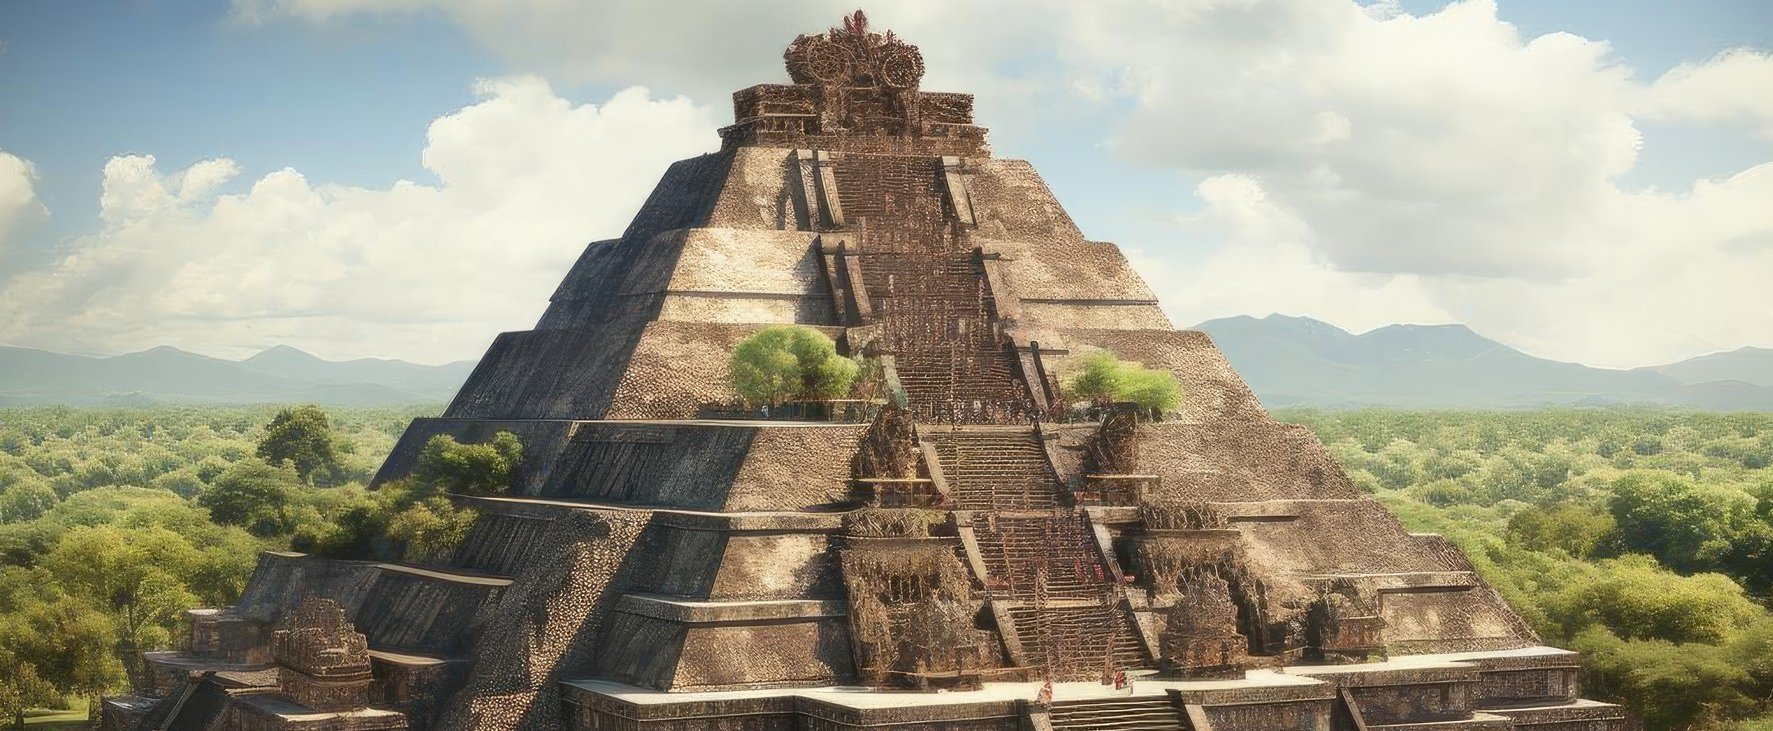 Több ezer ősi maja piramis rejtőzött a dzsungelben, nagyteljesítményű lézerrel fedezték fel a gigantikus eltűnt várost